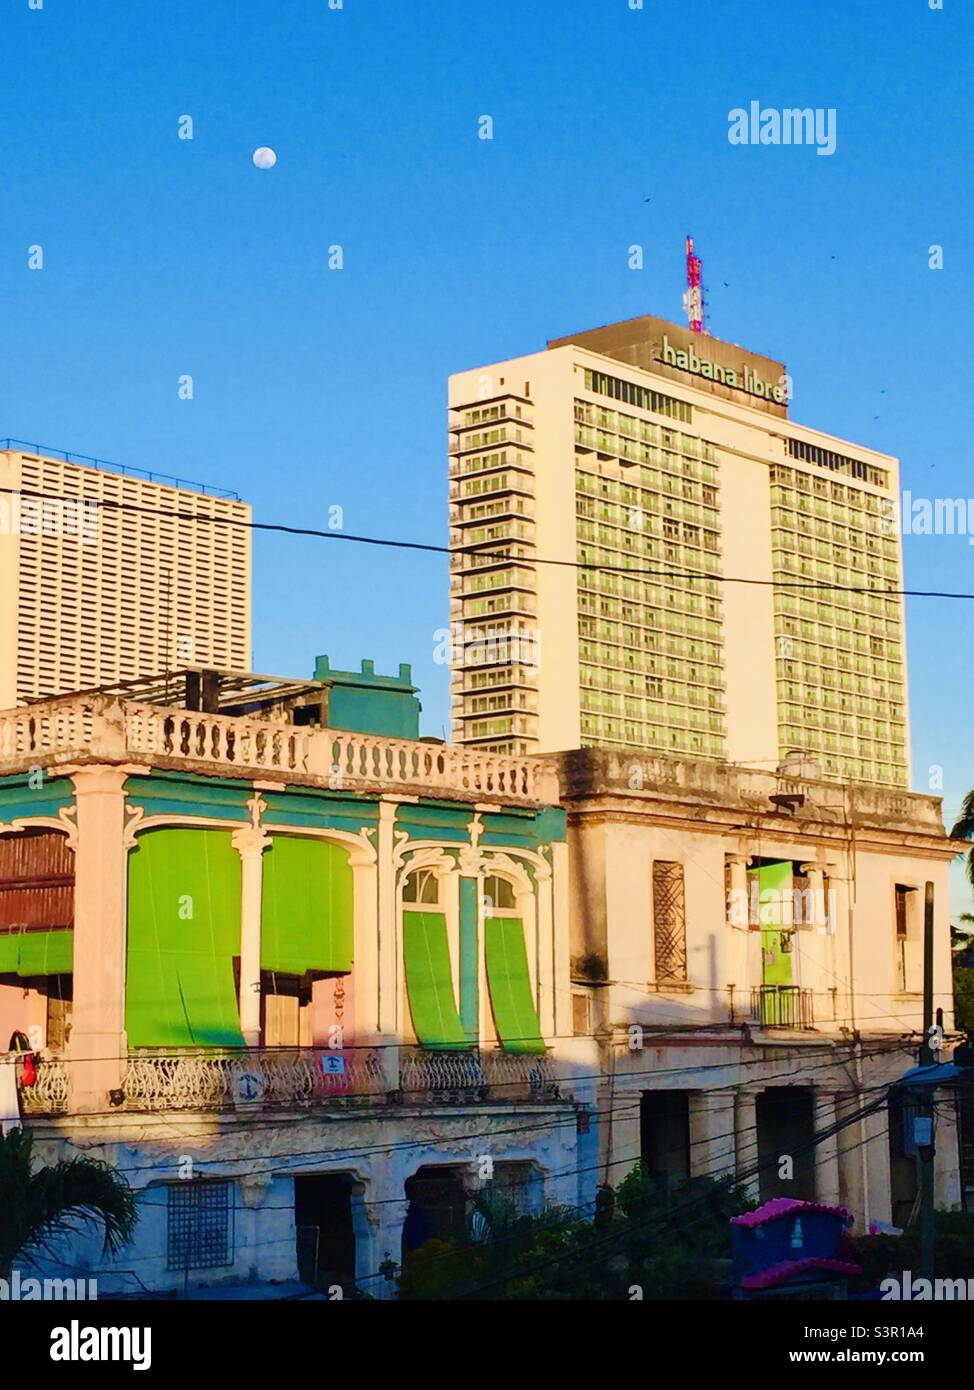 Vue sur l'hôtel Habana libre Banque D'Images